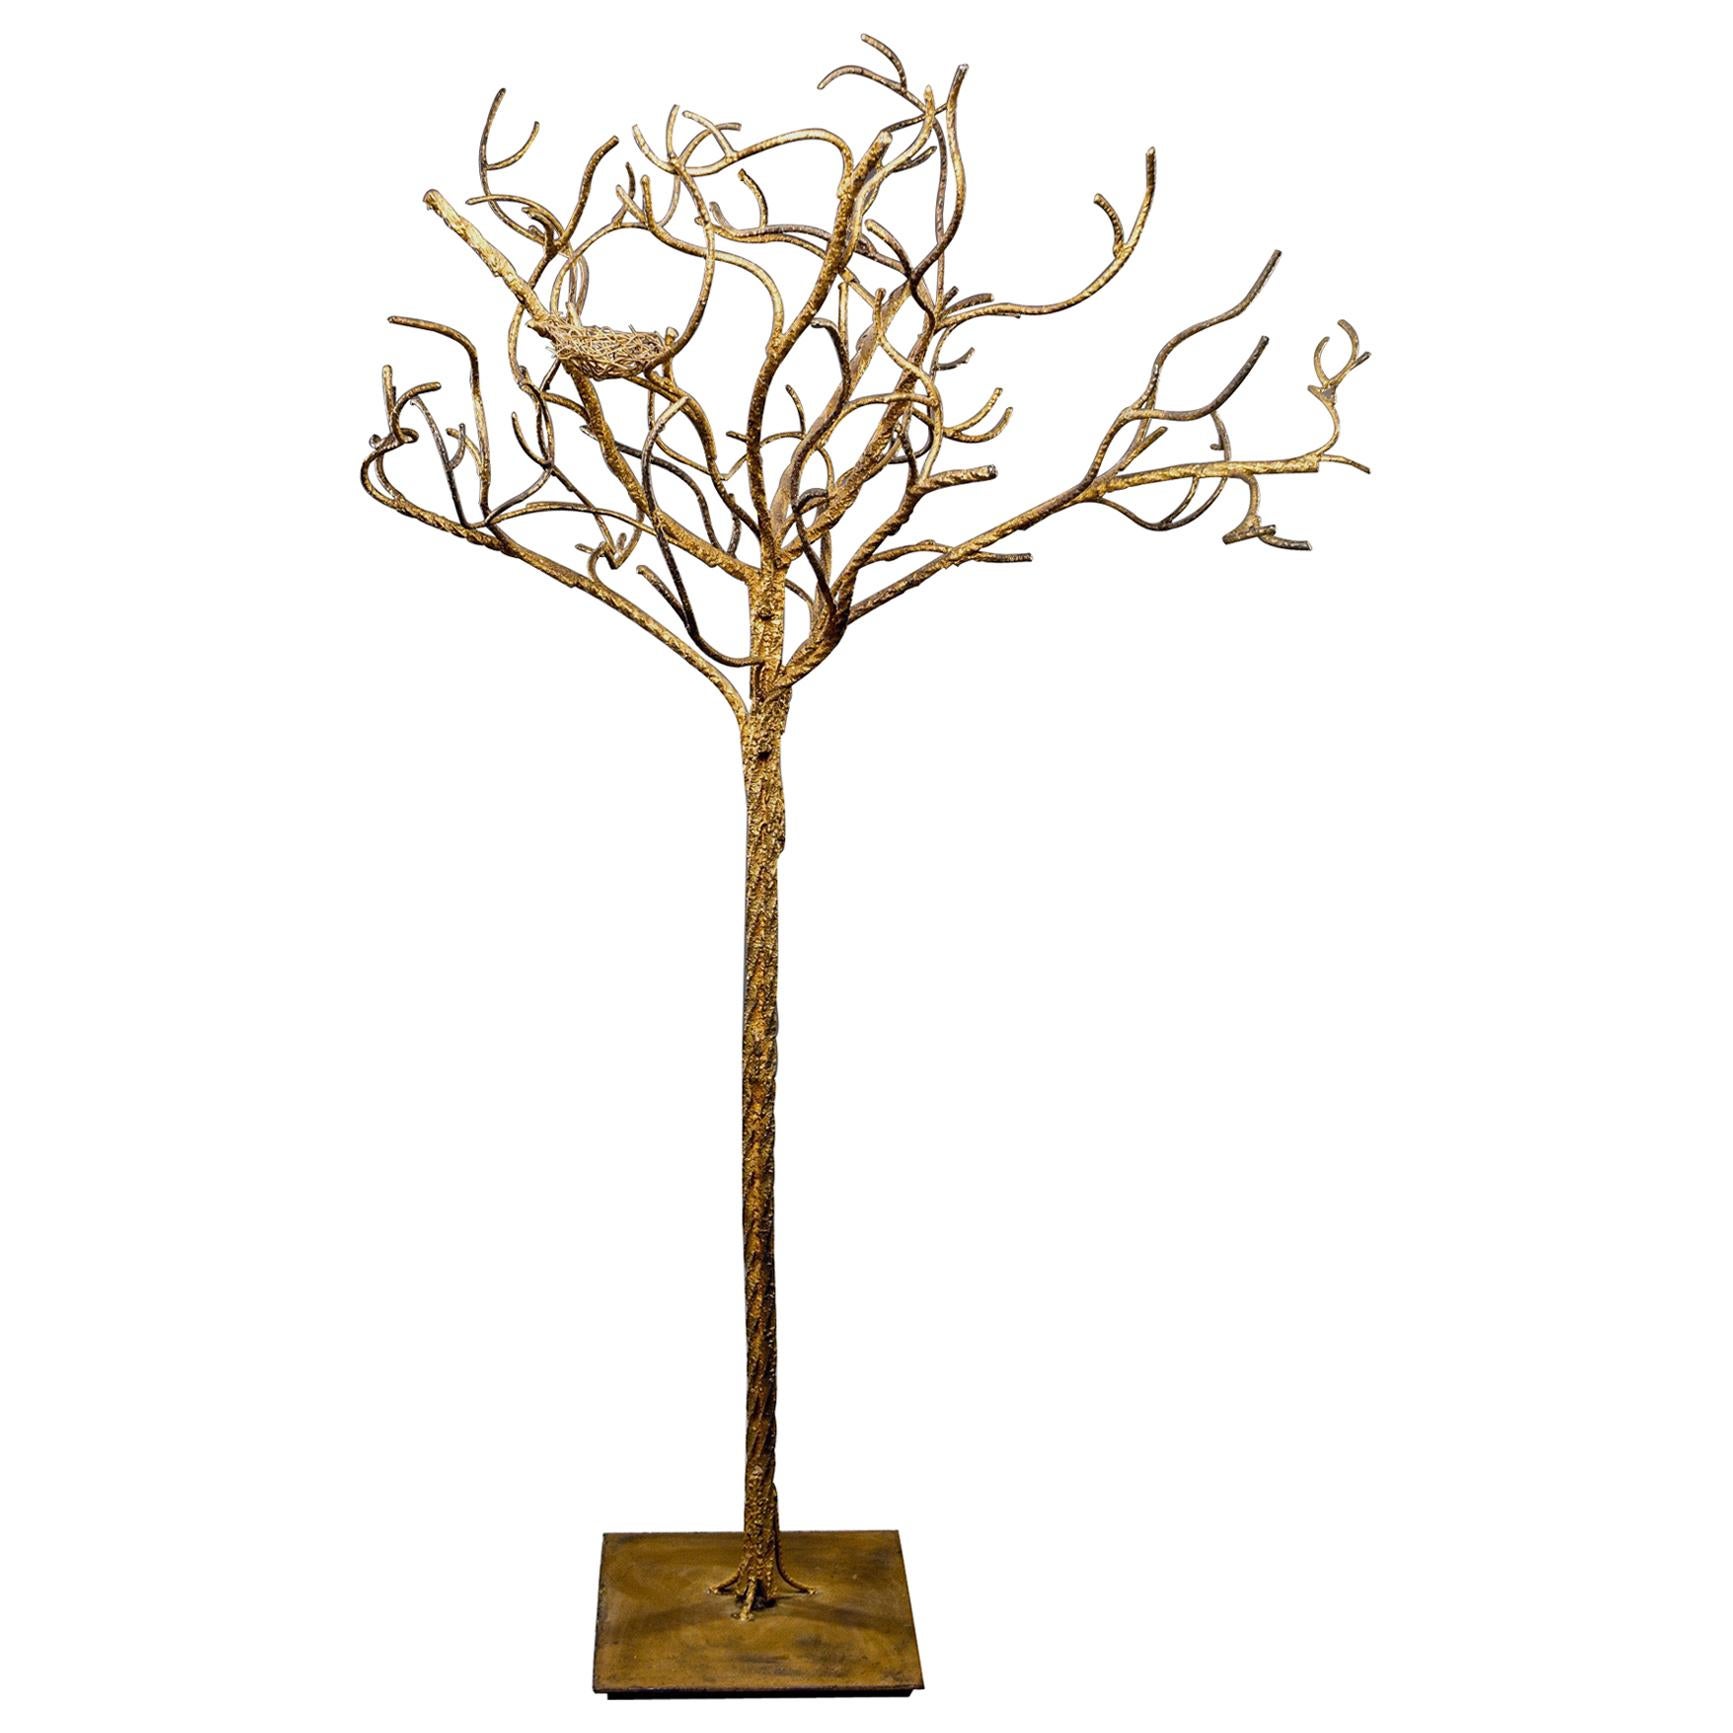 Midcentury Life-Sized Gilt Iron Tree with Nest